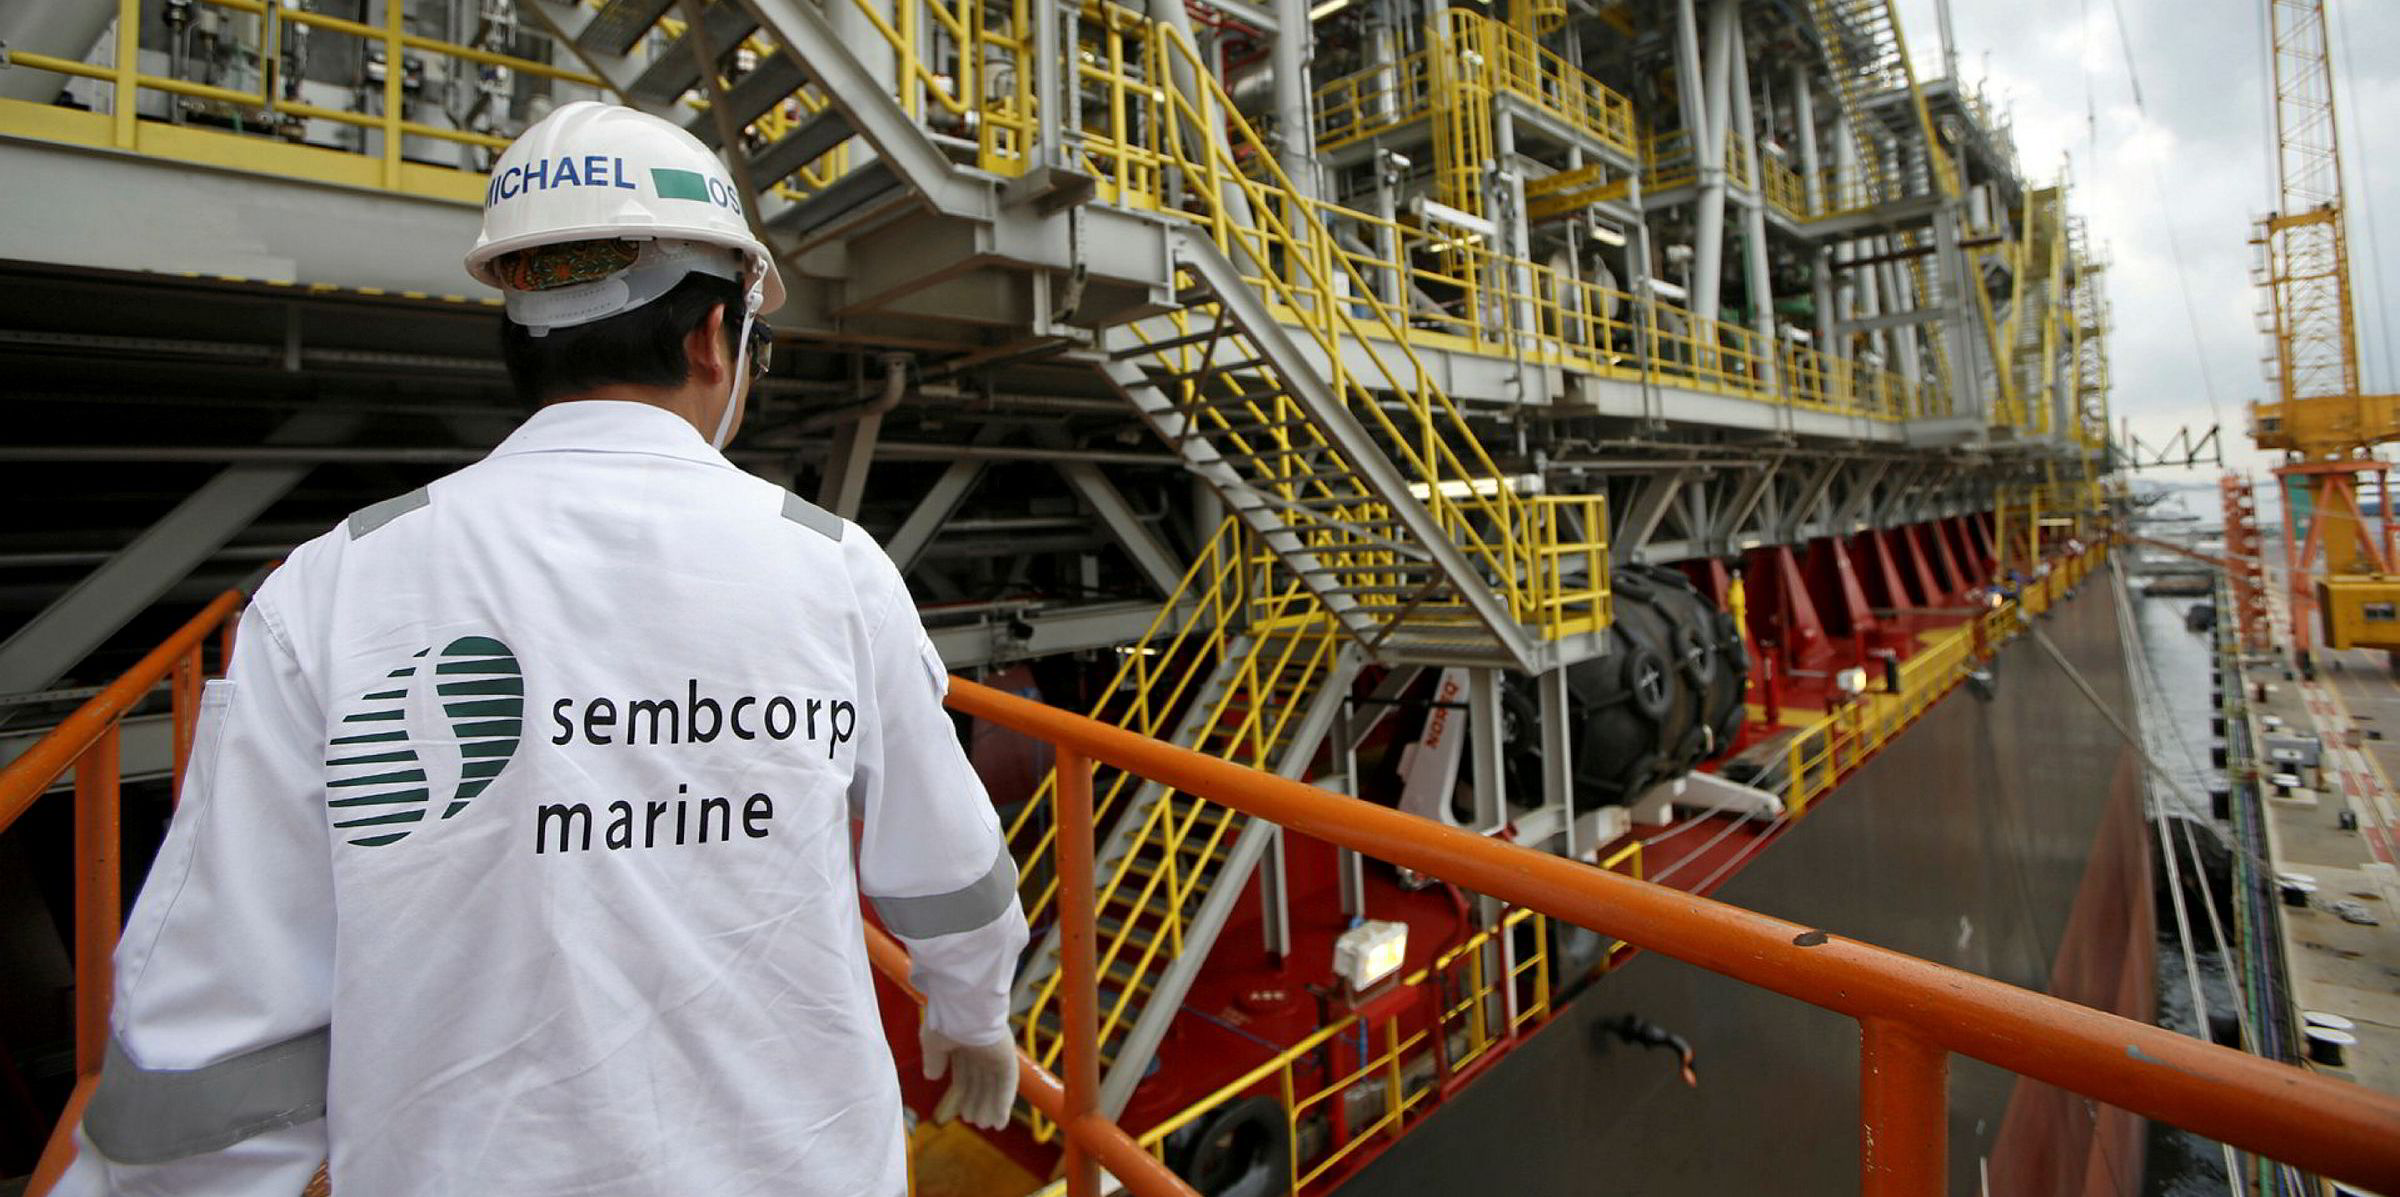 Búzios - petróleo - keppel - Sembcorp - plataforma - FPSO - construção - vagas de emprego - offshore